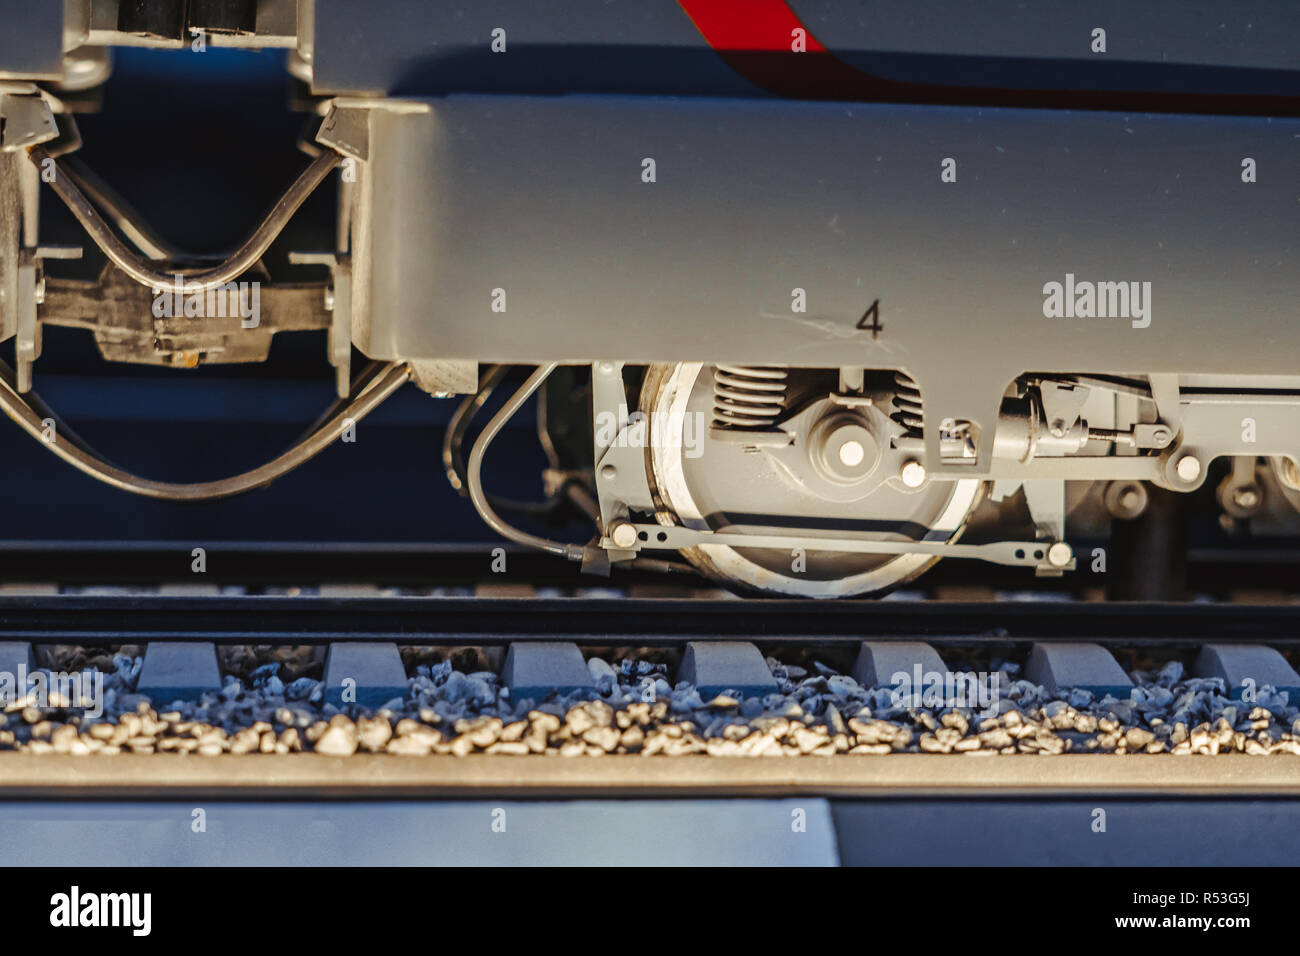 Auto diesel Zug, Spielzeug sowjetische Lokomotive Stockfotografie - Alamy